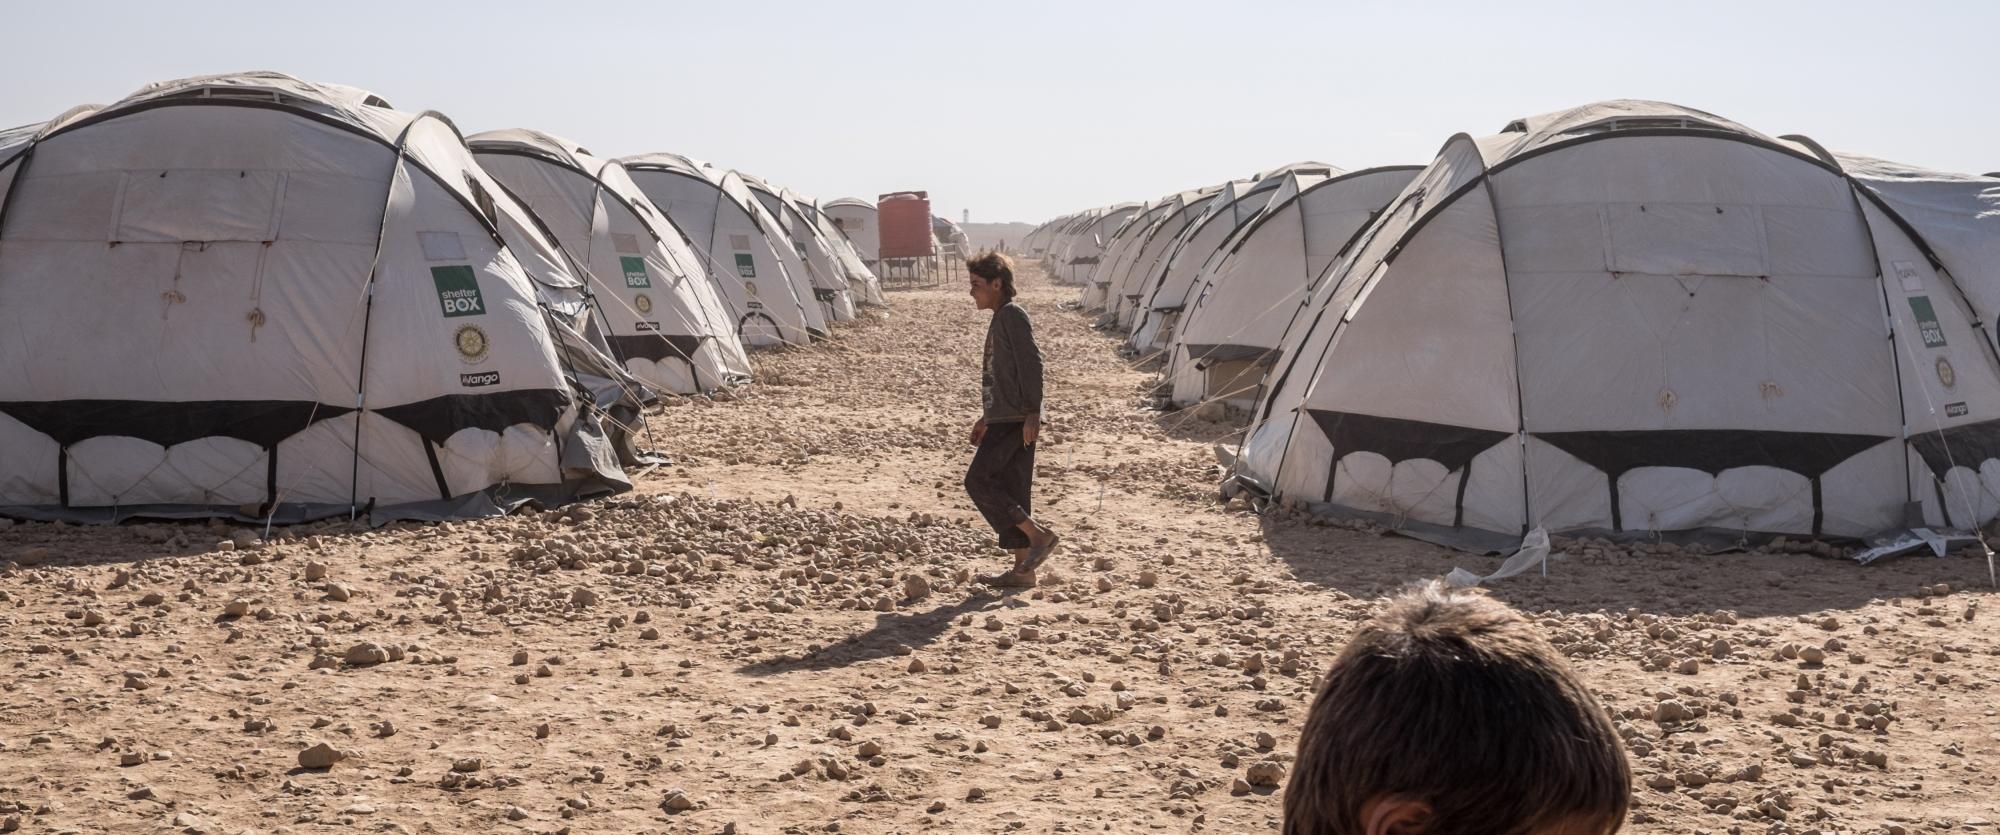 Le camp de déplacés d'Aïn Issa, situé à 60km de Rakka, dans le nord de la Syrie, en septembre 2017.